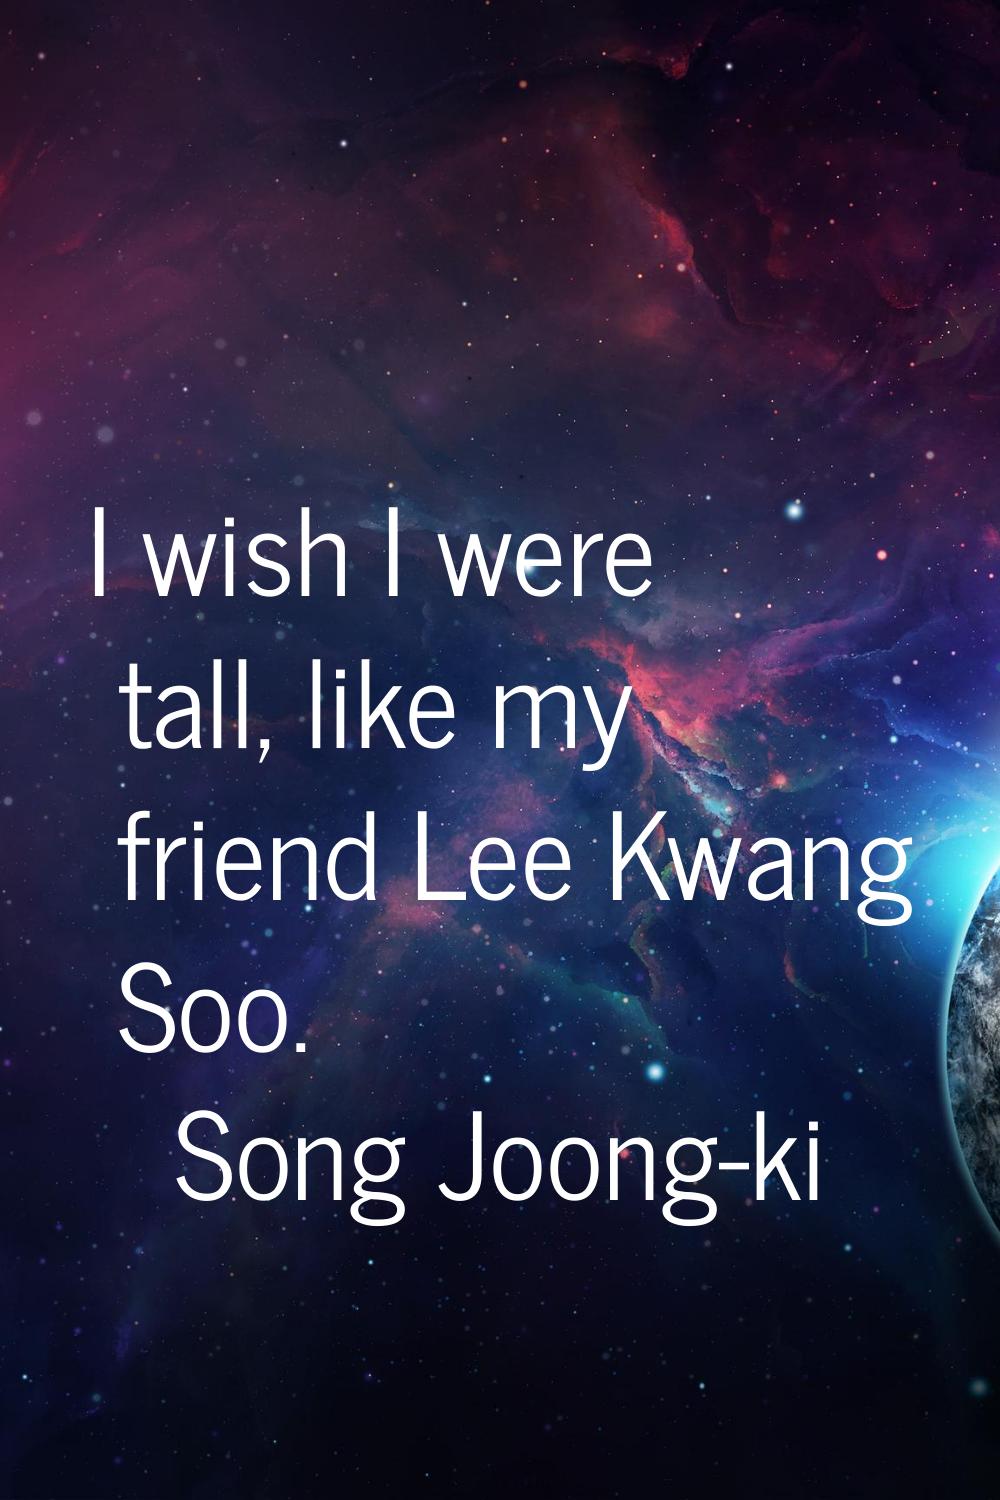 I wish I were tall, like my friend Lee Kwang Soo.